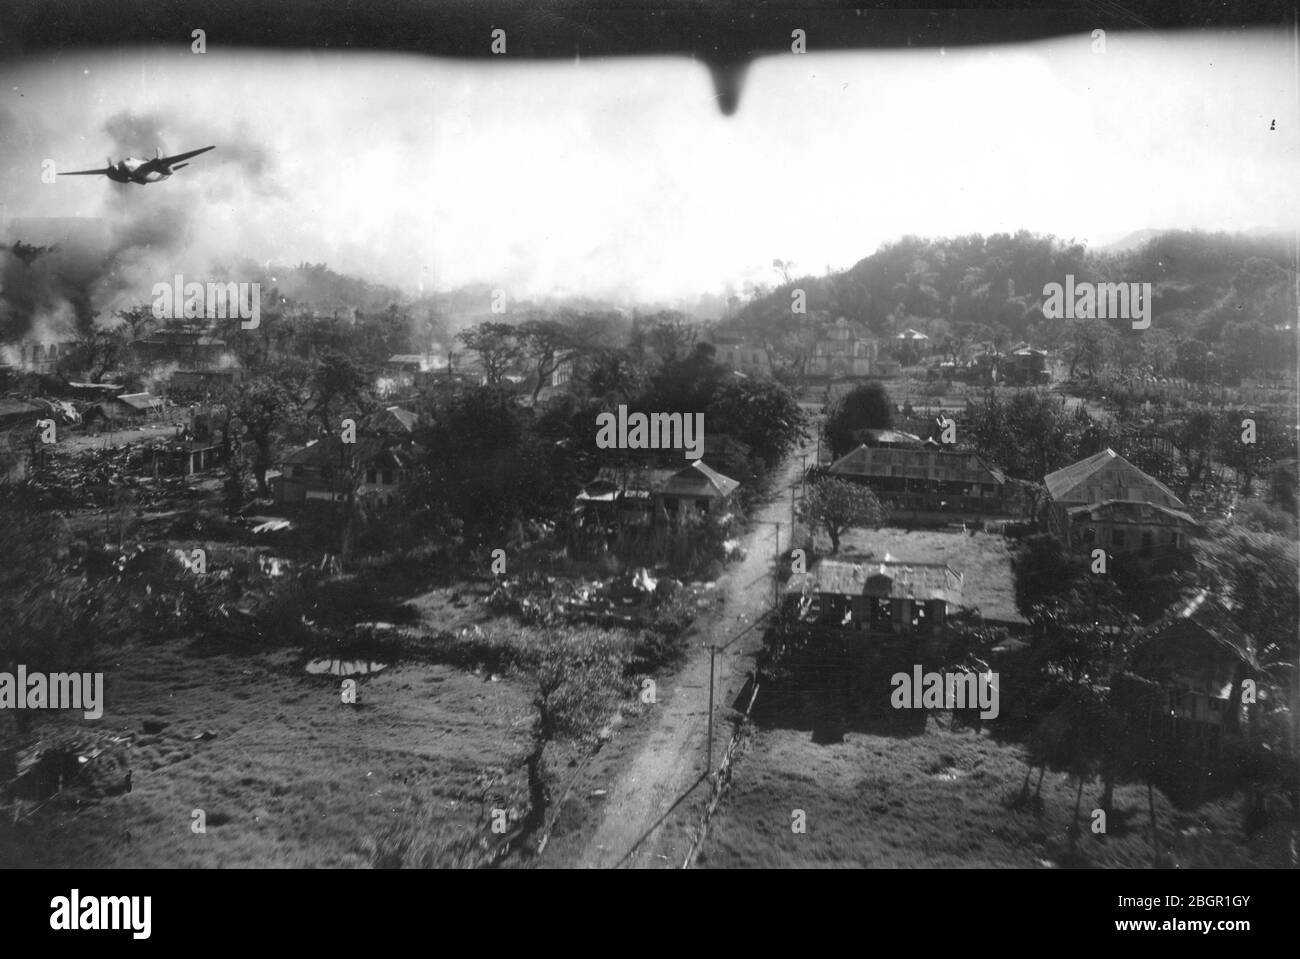 Bomben fallen # 1. Armee Luftwaffe fliegt Bombenangriffe über die hügelige Stadt San Fernando, die Philippinen, c. 1945. Der Blick nach hinten unter einem Flugzeug teilt sich den Luftraum mit einem mittelschweren Bomber, der über San Fernando fliegt. Dieser Bomber hat seine Bombenabwurftür geöffnet und schwerer Staub und Rauch steigen von mehreren Stellen auf dem Boden auf, wo Bomben getroffen haben. Der Bomber scheint entweder ein mittlerer Bomber Douglas A-20 Havoc oder ein mittlerer Bomber Douglas A-26 Invader zu sein. Um meine anderen WW II-bezogenen Bilder zu sehen, Suche: Prestor Vintage WW II Stockfoto